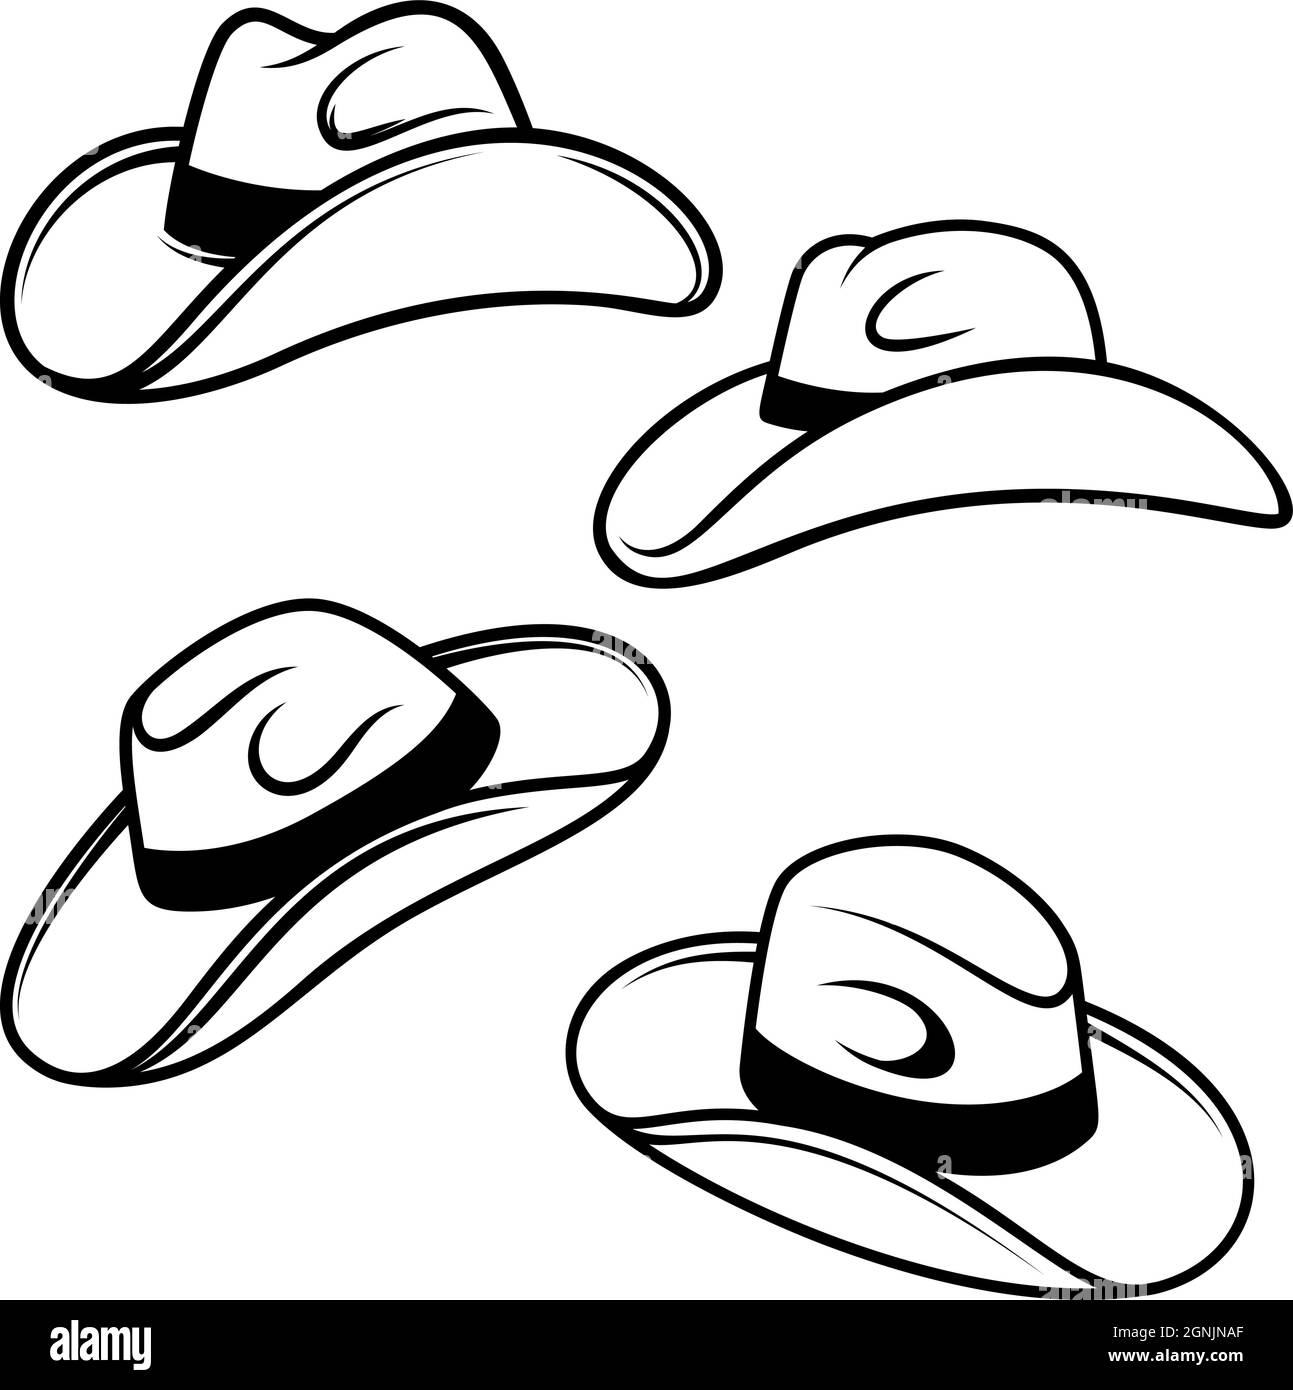 Set of Illustrations of cowboy hats. Design element for logo, label, sign, emblem, poster. Vector illustration Stock Vector